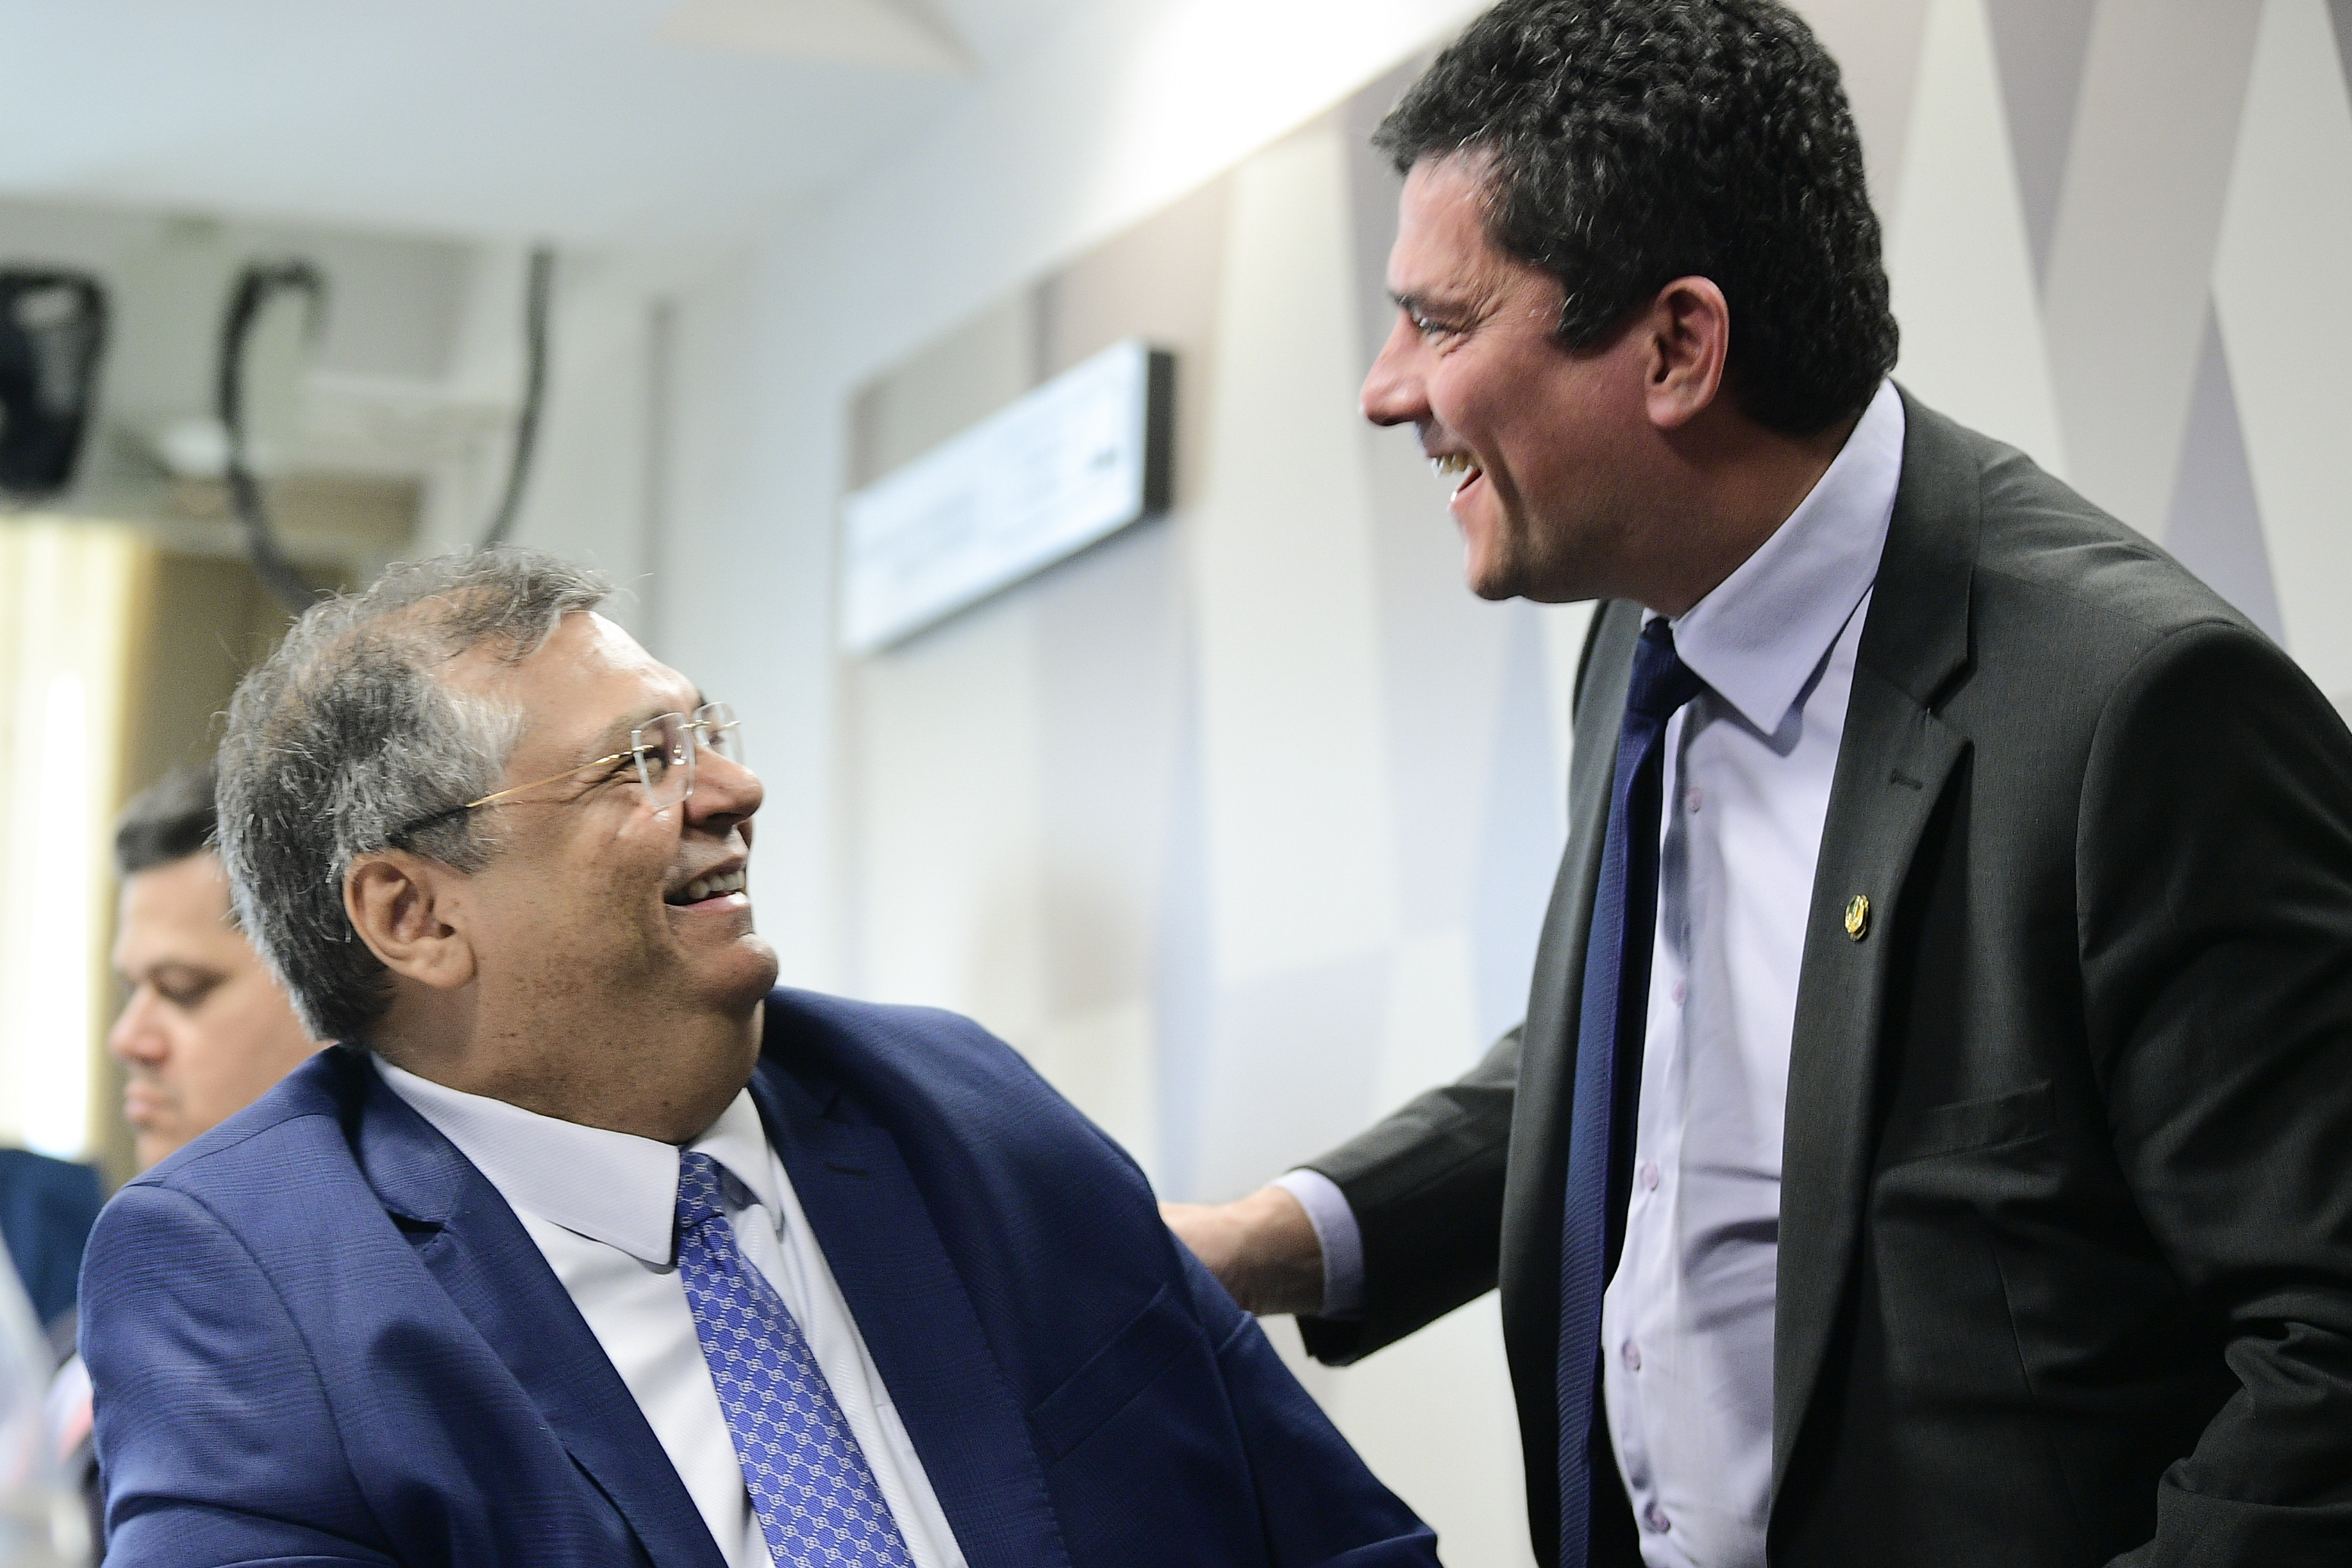 O senador Sergio Moro (União Brasil-PR) cumprimentou o ministro Flávio Dino, sabatinado nesta quarta-feira (13) pela CCJ (Comissão de Constituição e Justiça) do Senado.